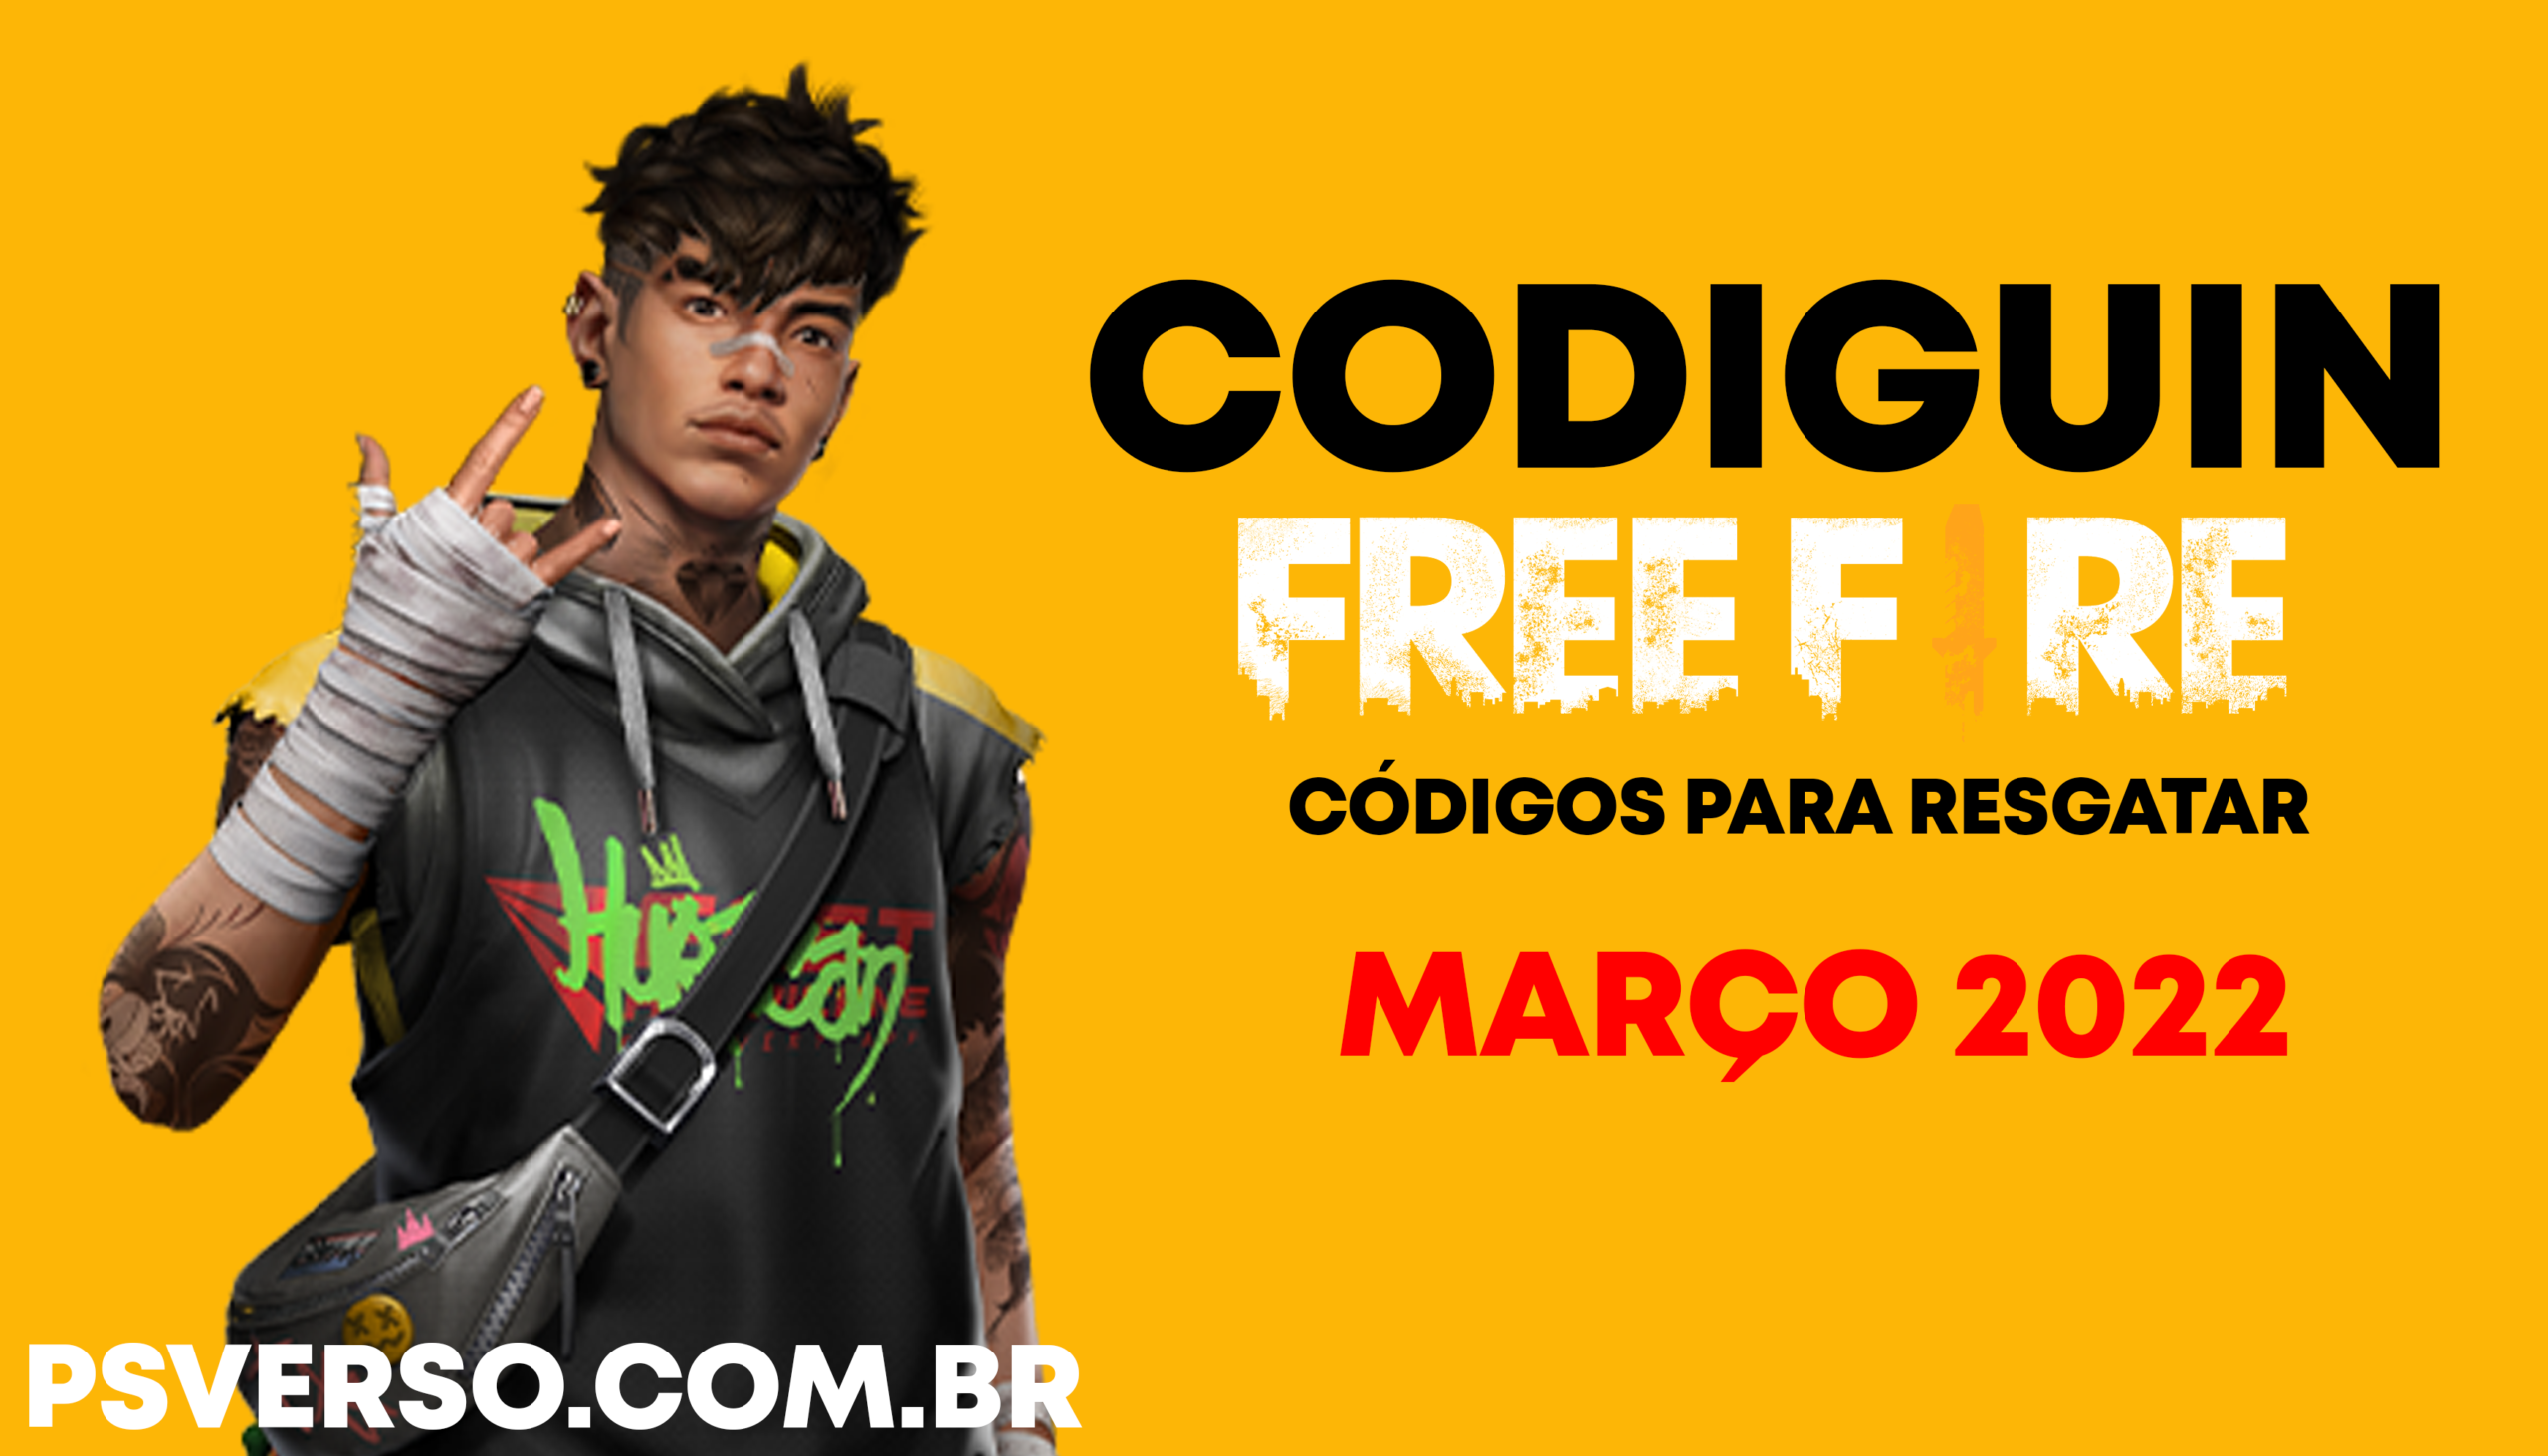 CÓDIGUIN FREE FIRE 2022 - COMO PEGAR CÓDIGO ATIVO DE 21 A 27 DE FEVEREIRO!  RESGATE O CODIGUIN! 